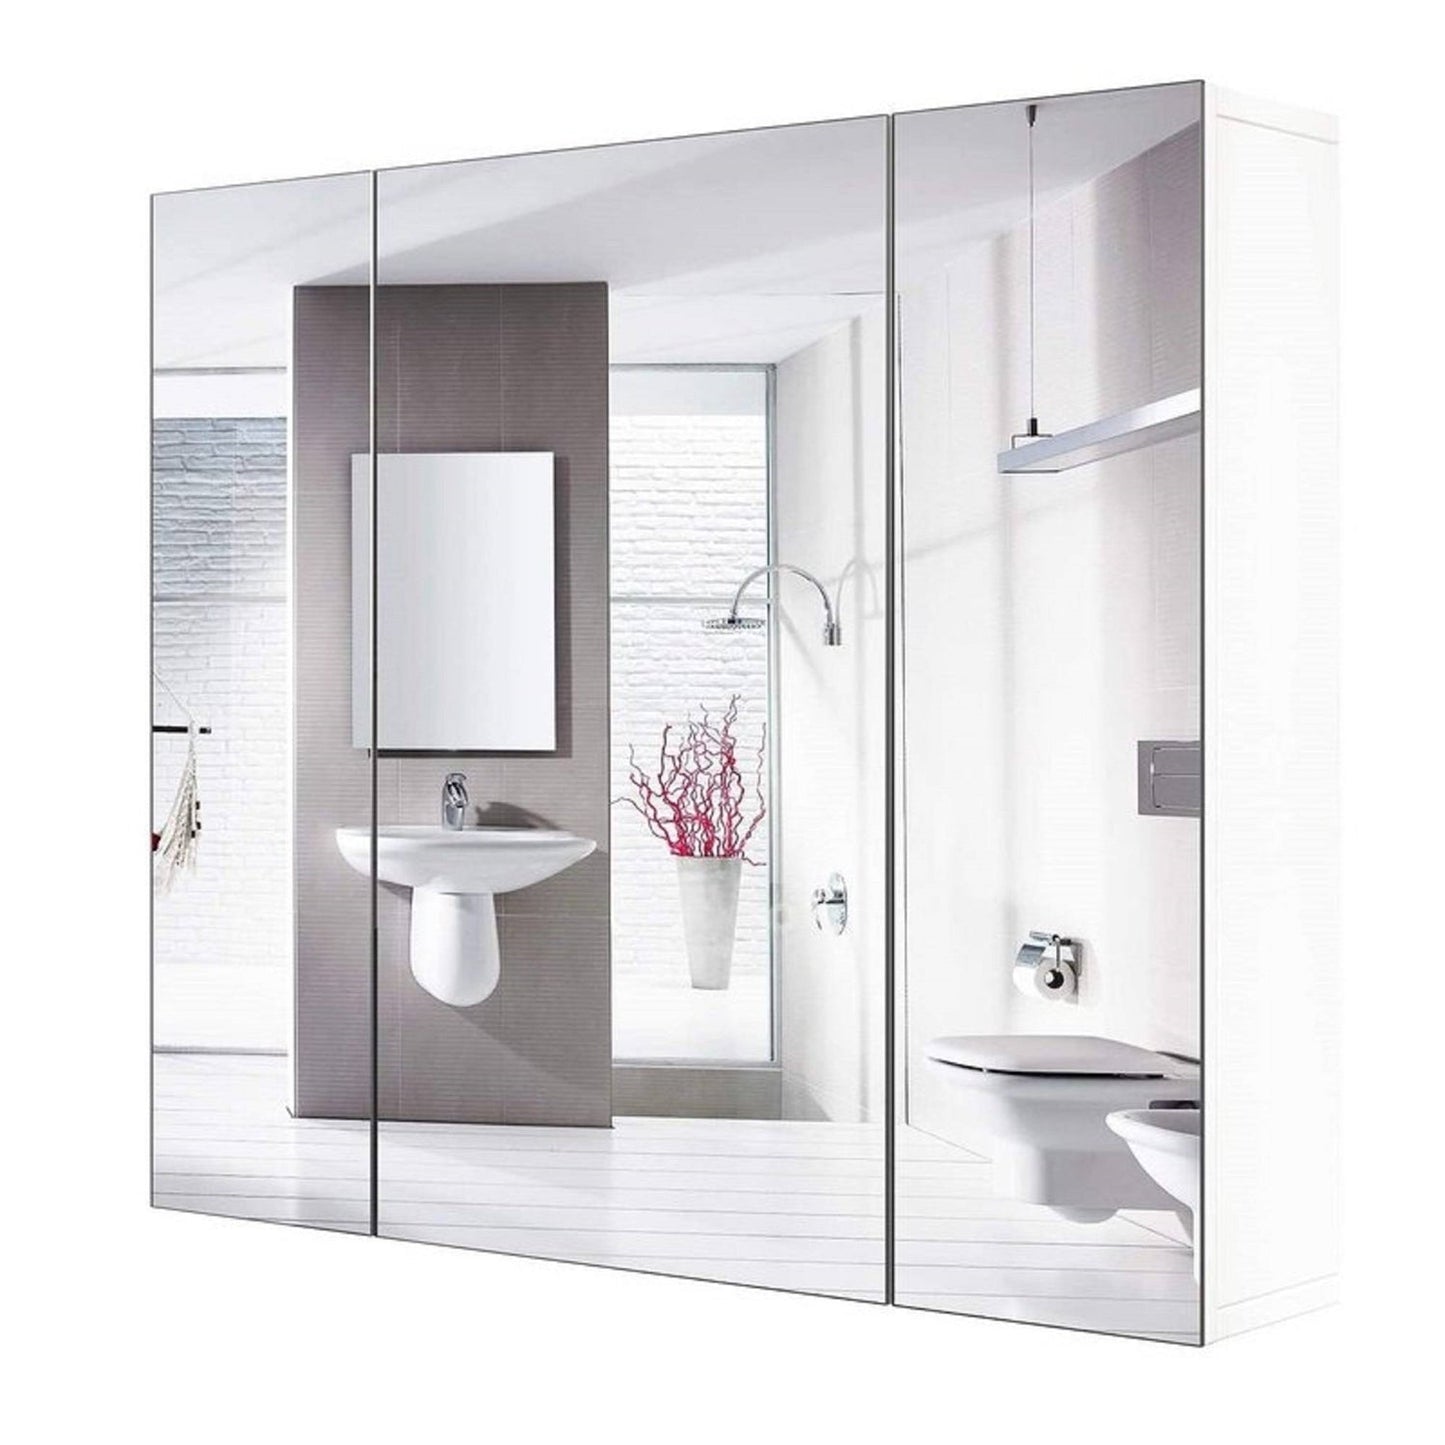 Bathroom > Bathroom Cabinets - Modern 3-Door Wall Mounted Medicine Cabinet Bathroom Mirror Cupboard